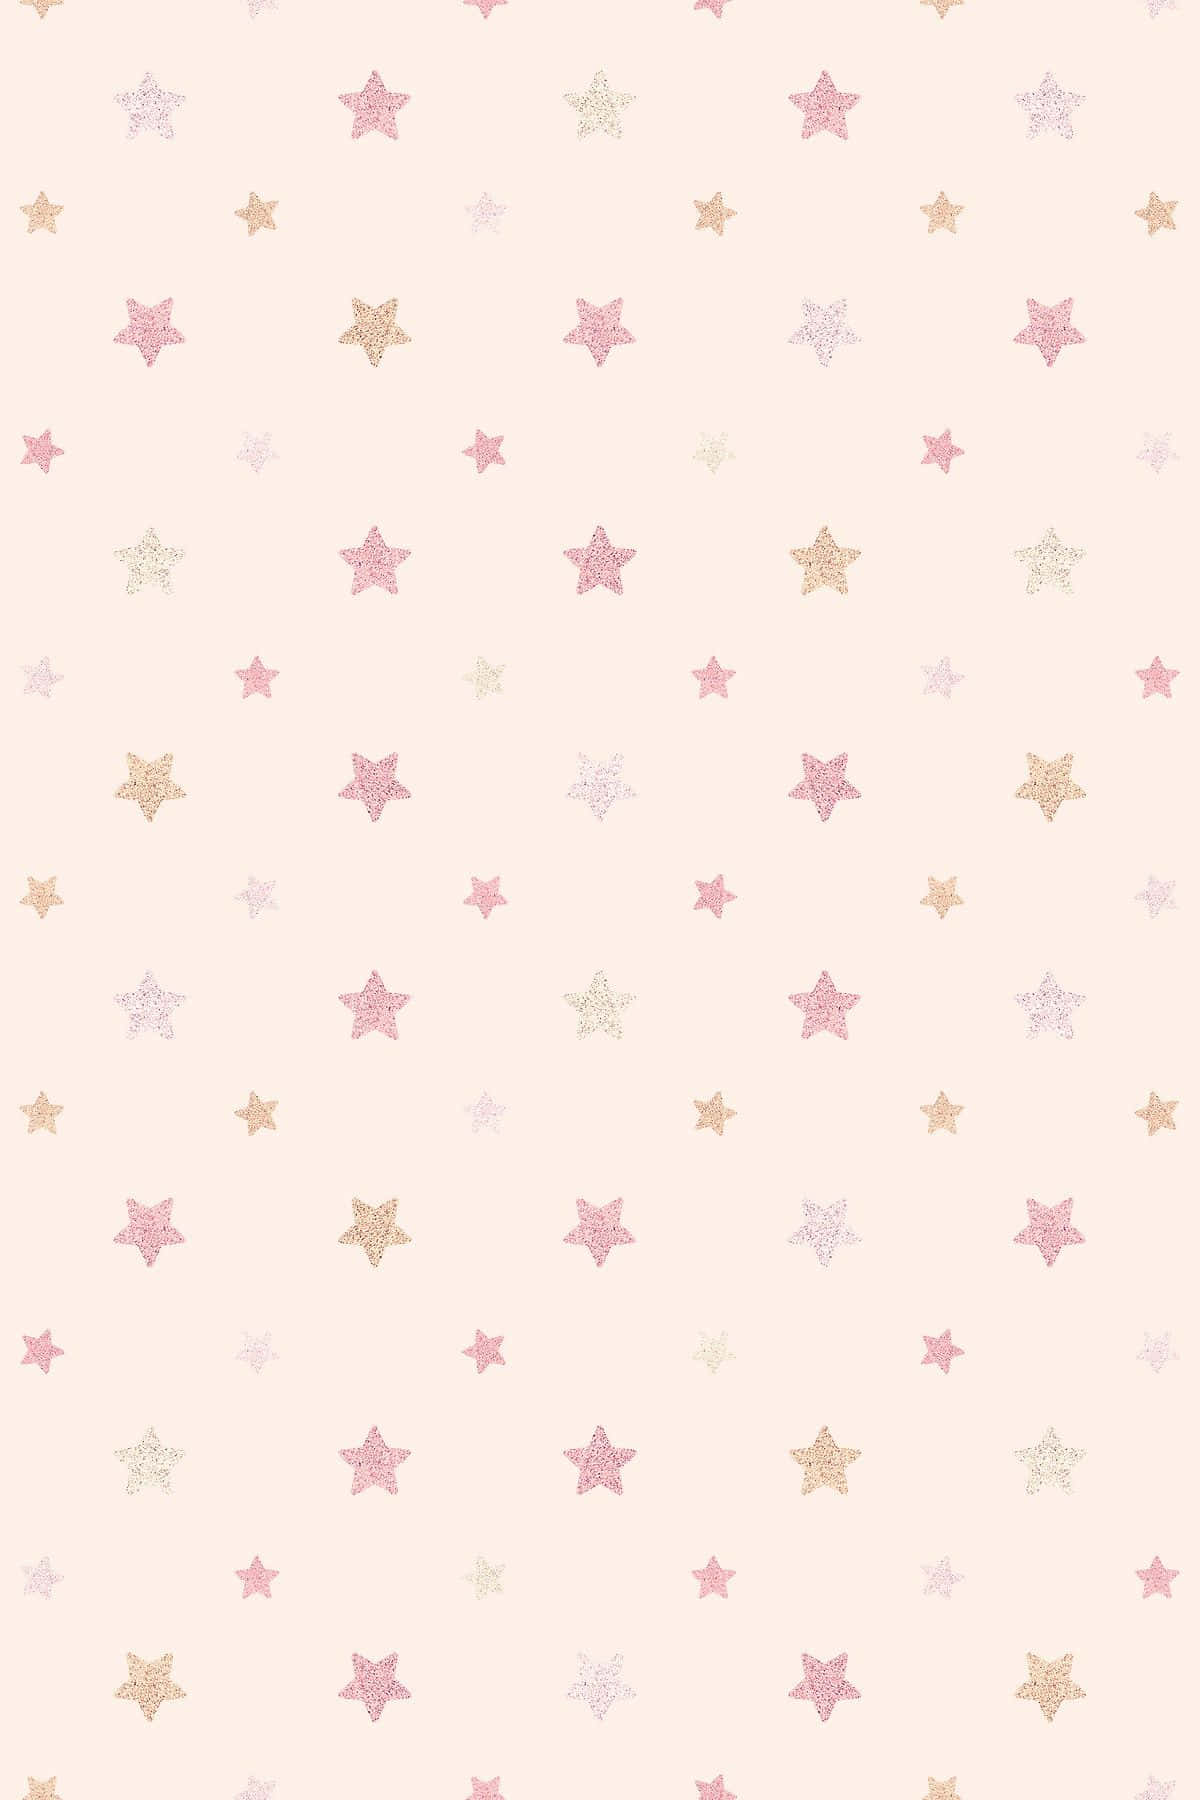 A beautiful illuminated pink star background